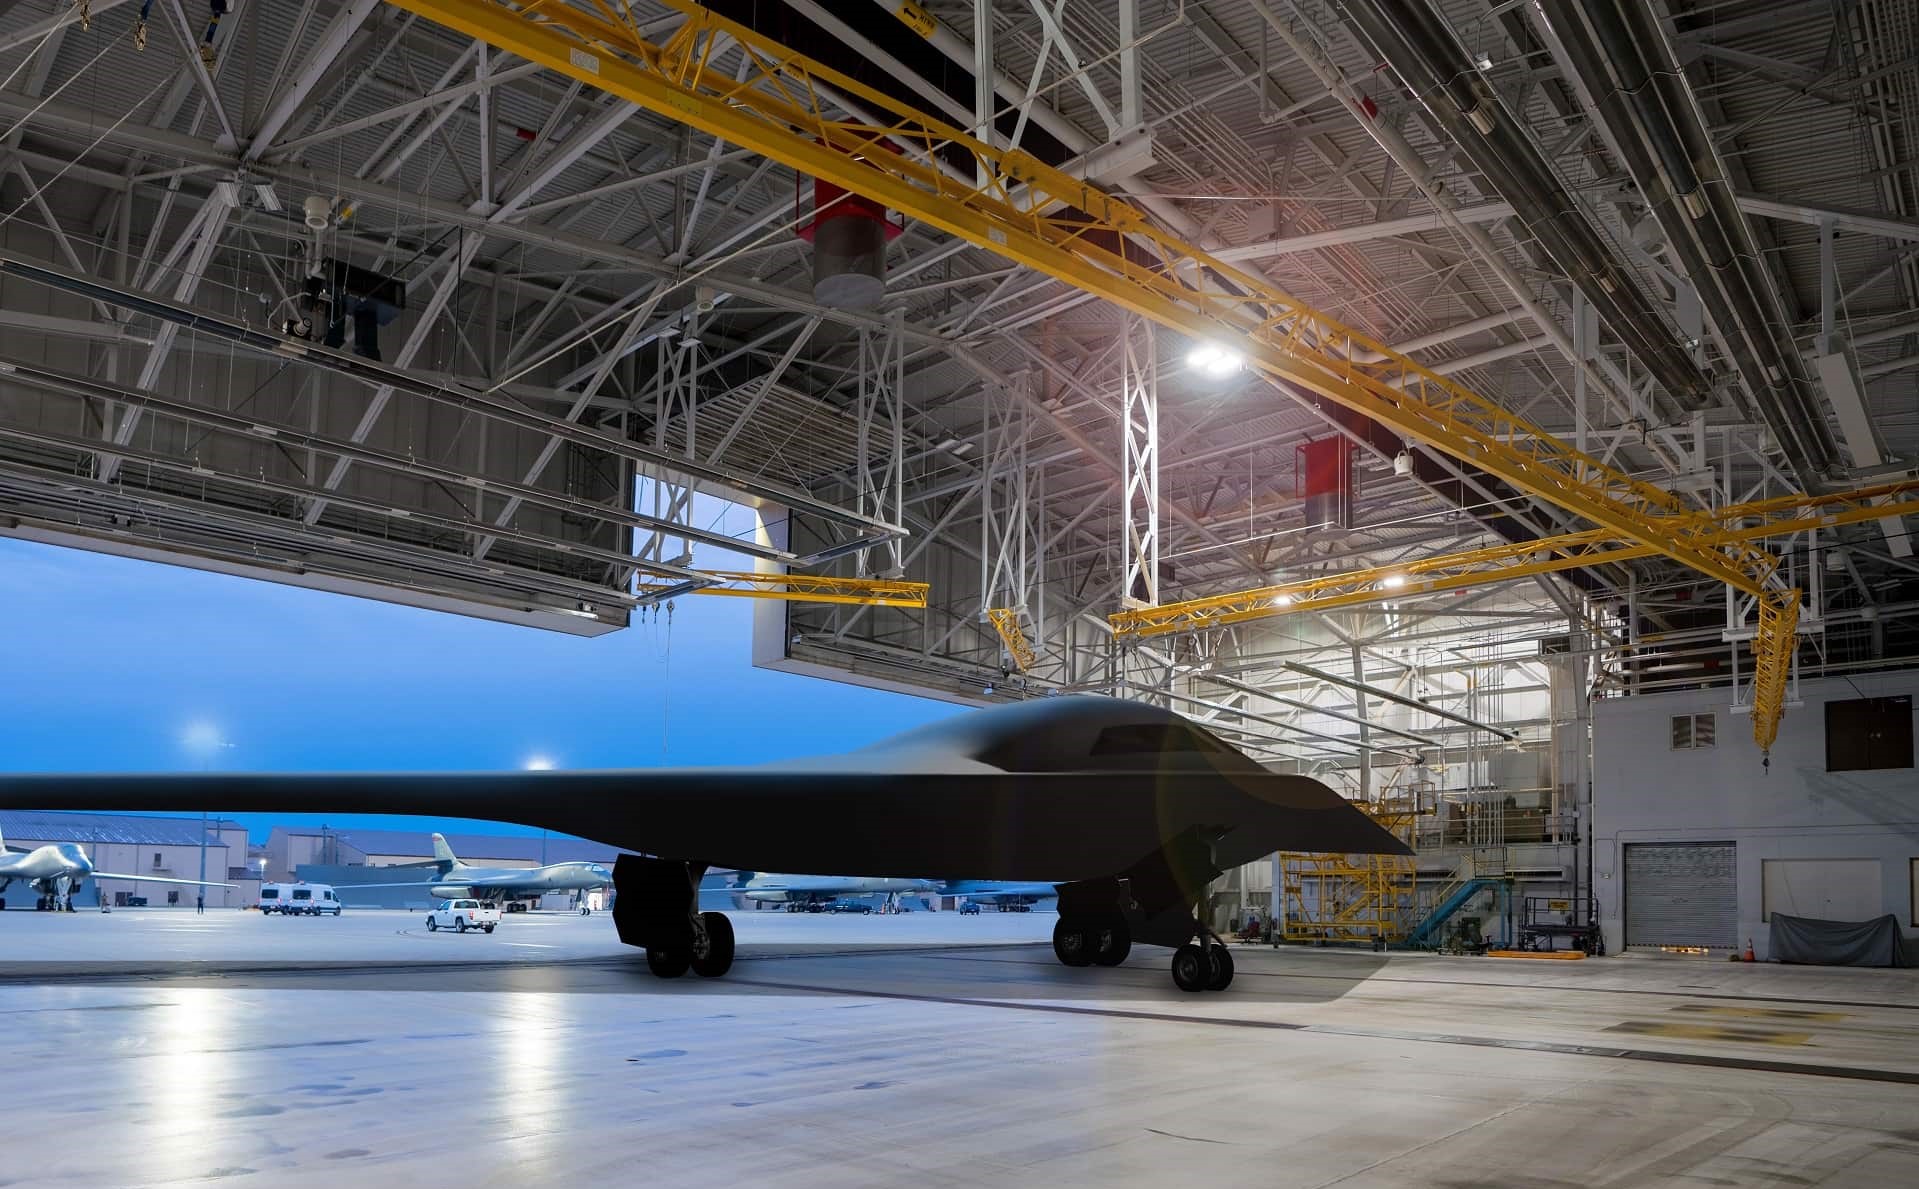 Το 2023 θα πραγματοποιηθεί τελικά η πρώτη πτήση του νέου στρατηγικού βομβαρδιστικού Β-21 Raider